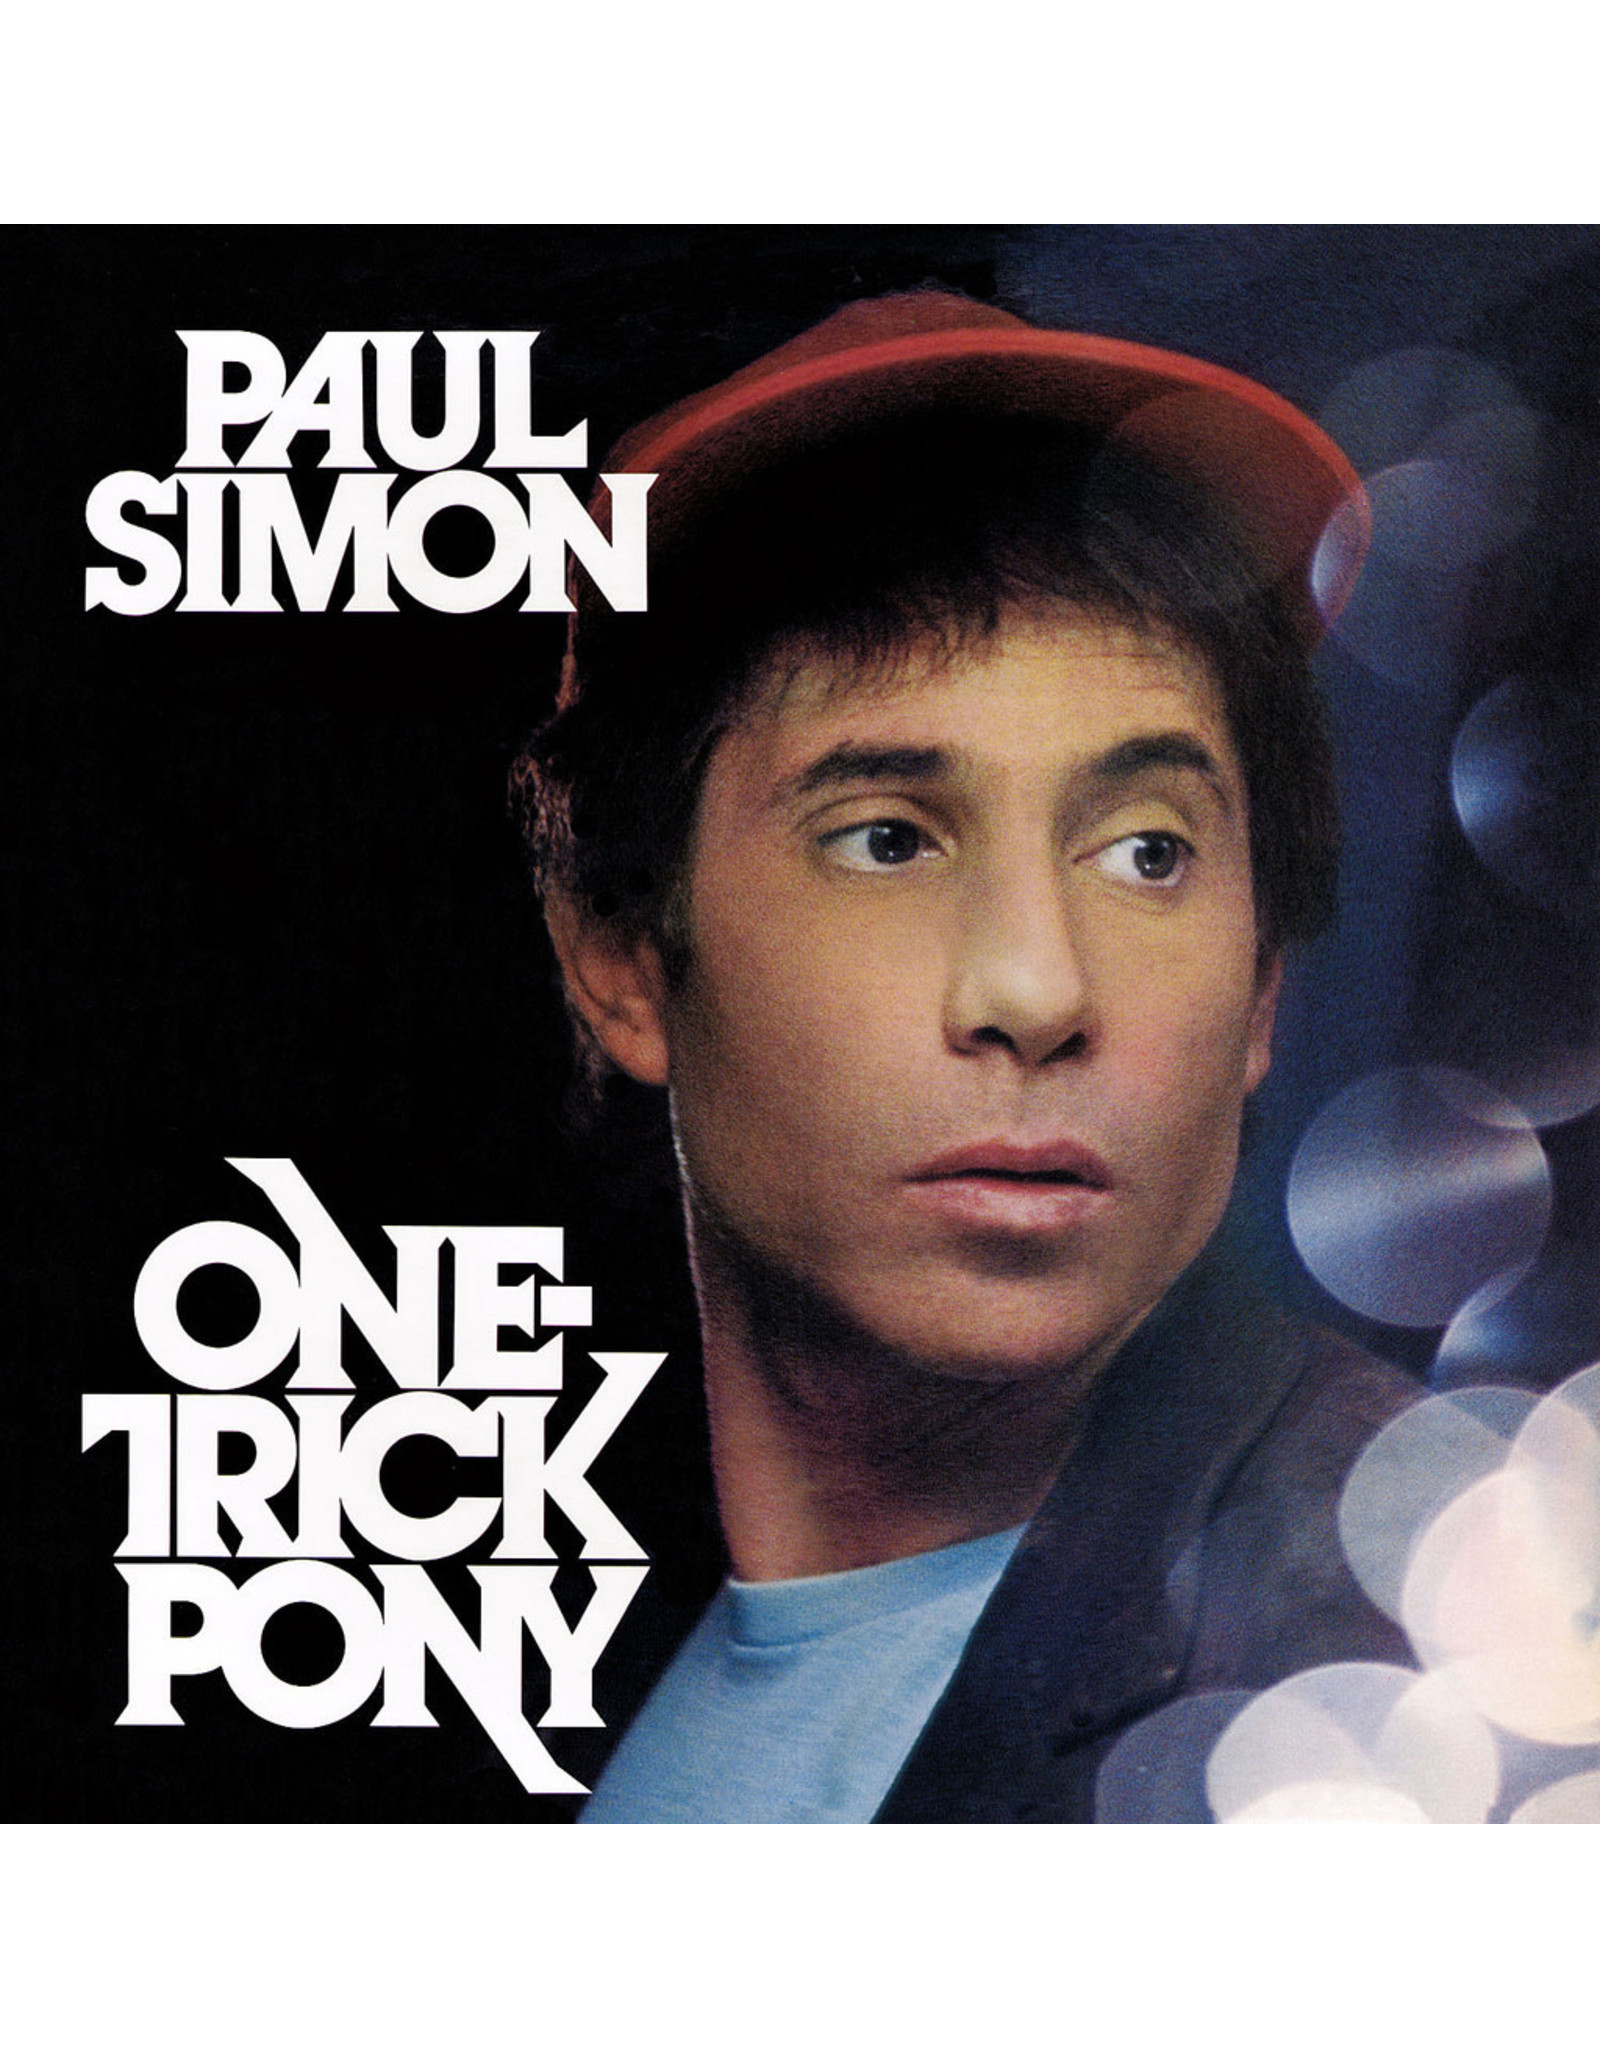 Paul Simon - One Tricky Pony